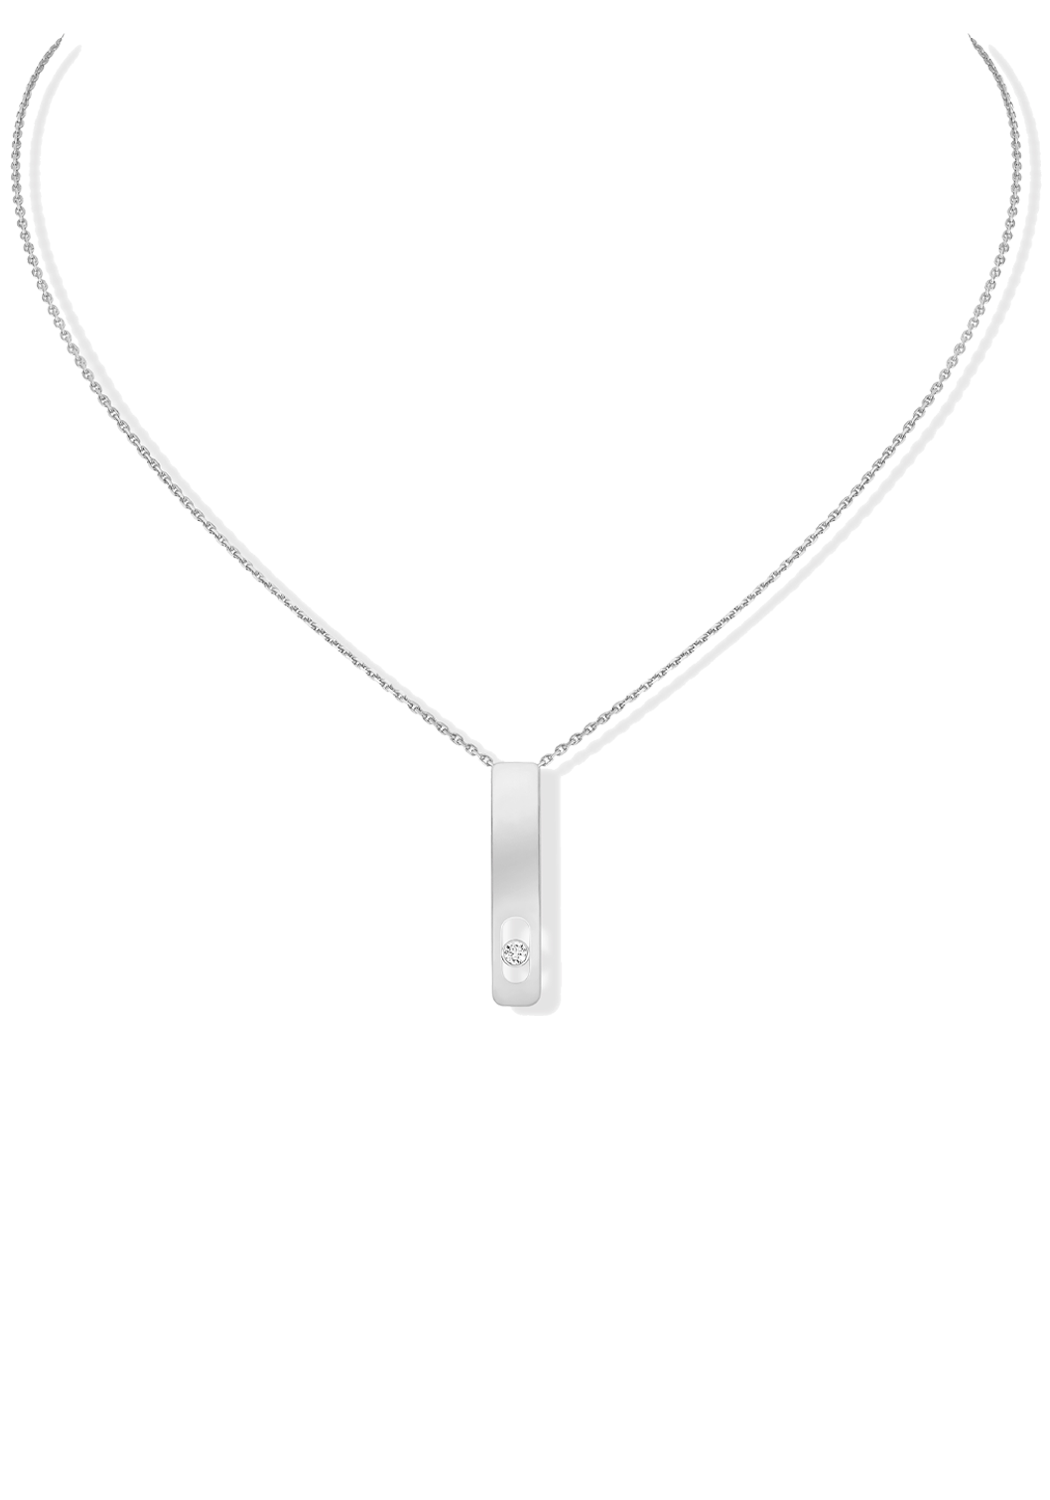 Messika My First Diamond 18KWG Diamond Necklace | Ref. 07498-WG | OsterJewelers.com